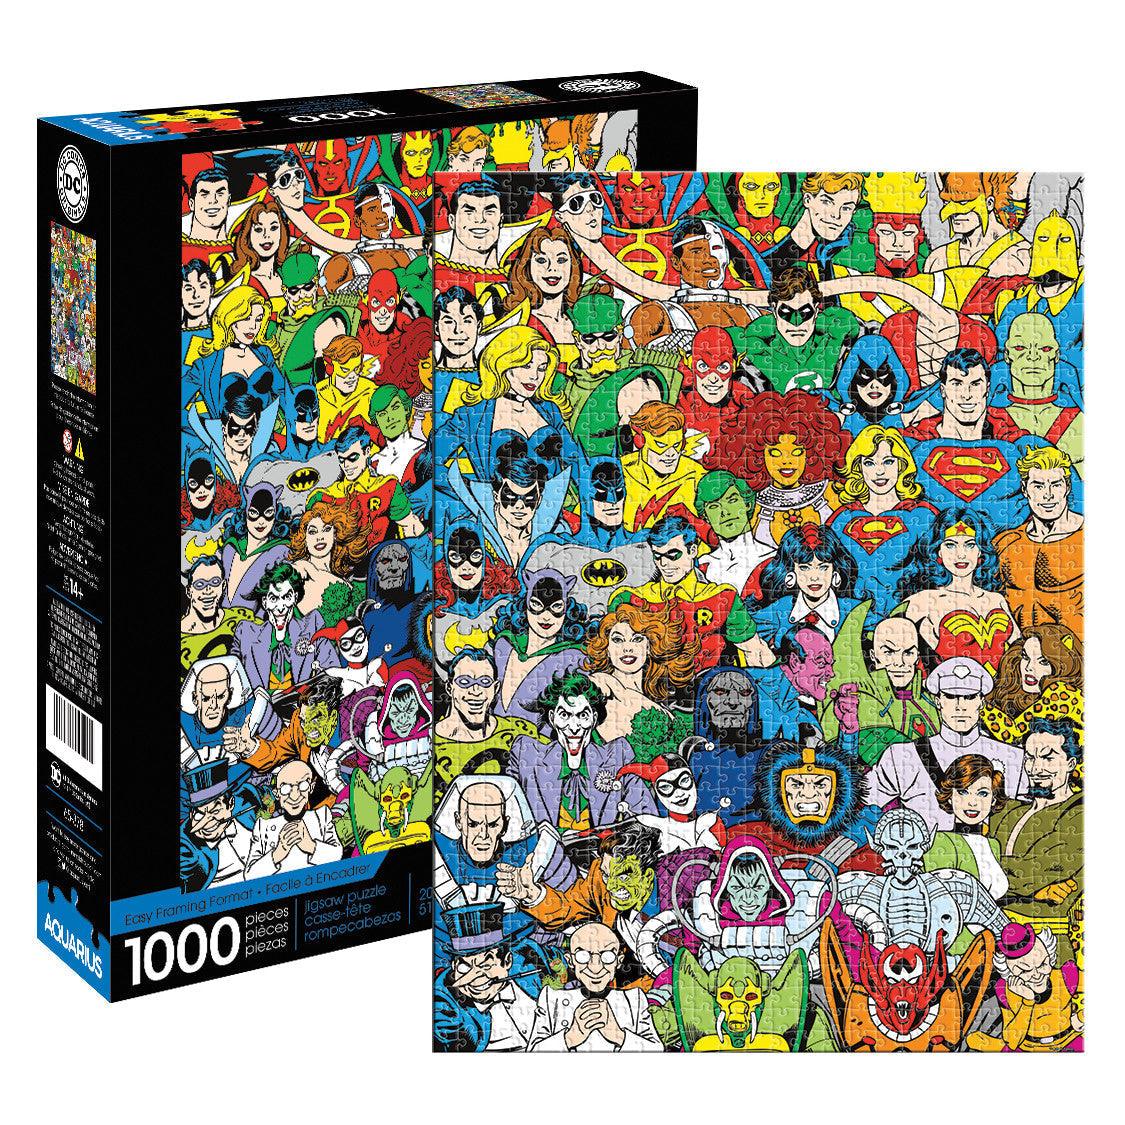 VR-84720 Aquarius Puzzle DC Comics Retro Cast Puzzle 1,000 pieces - Aquarius - Titan Pop Culture